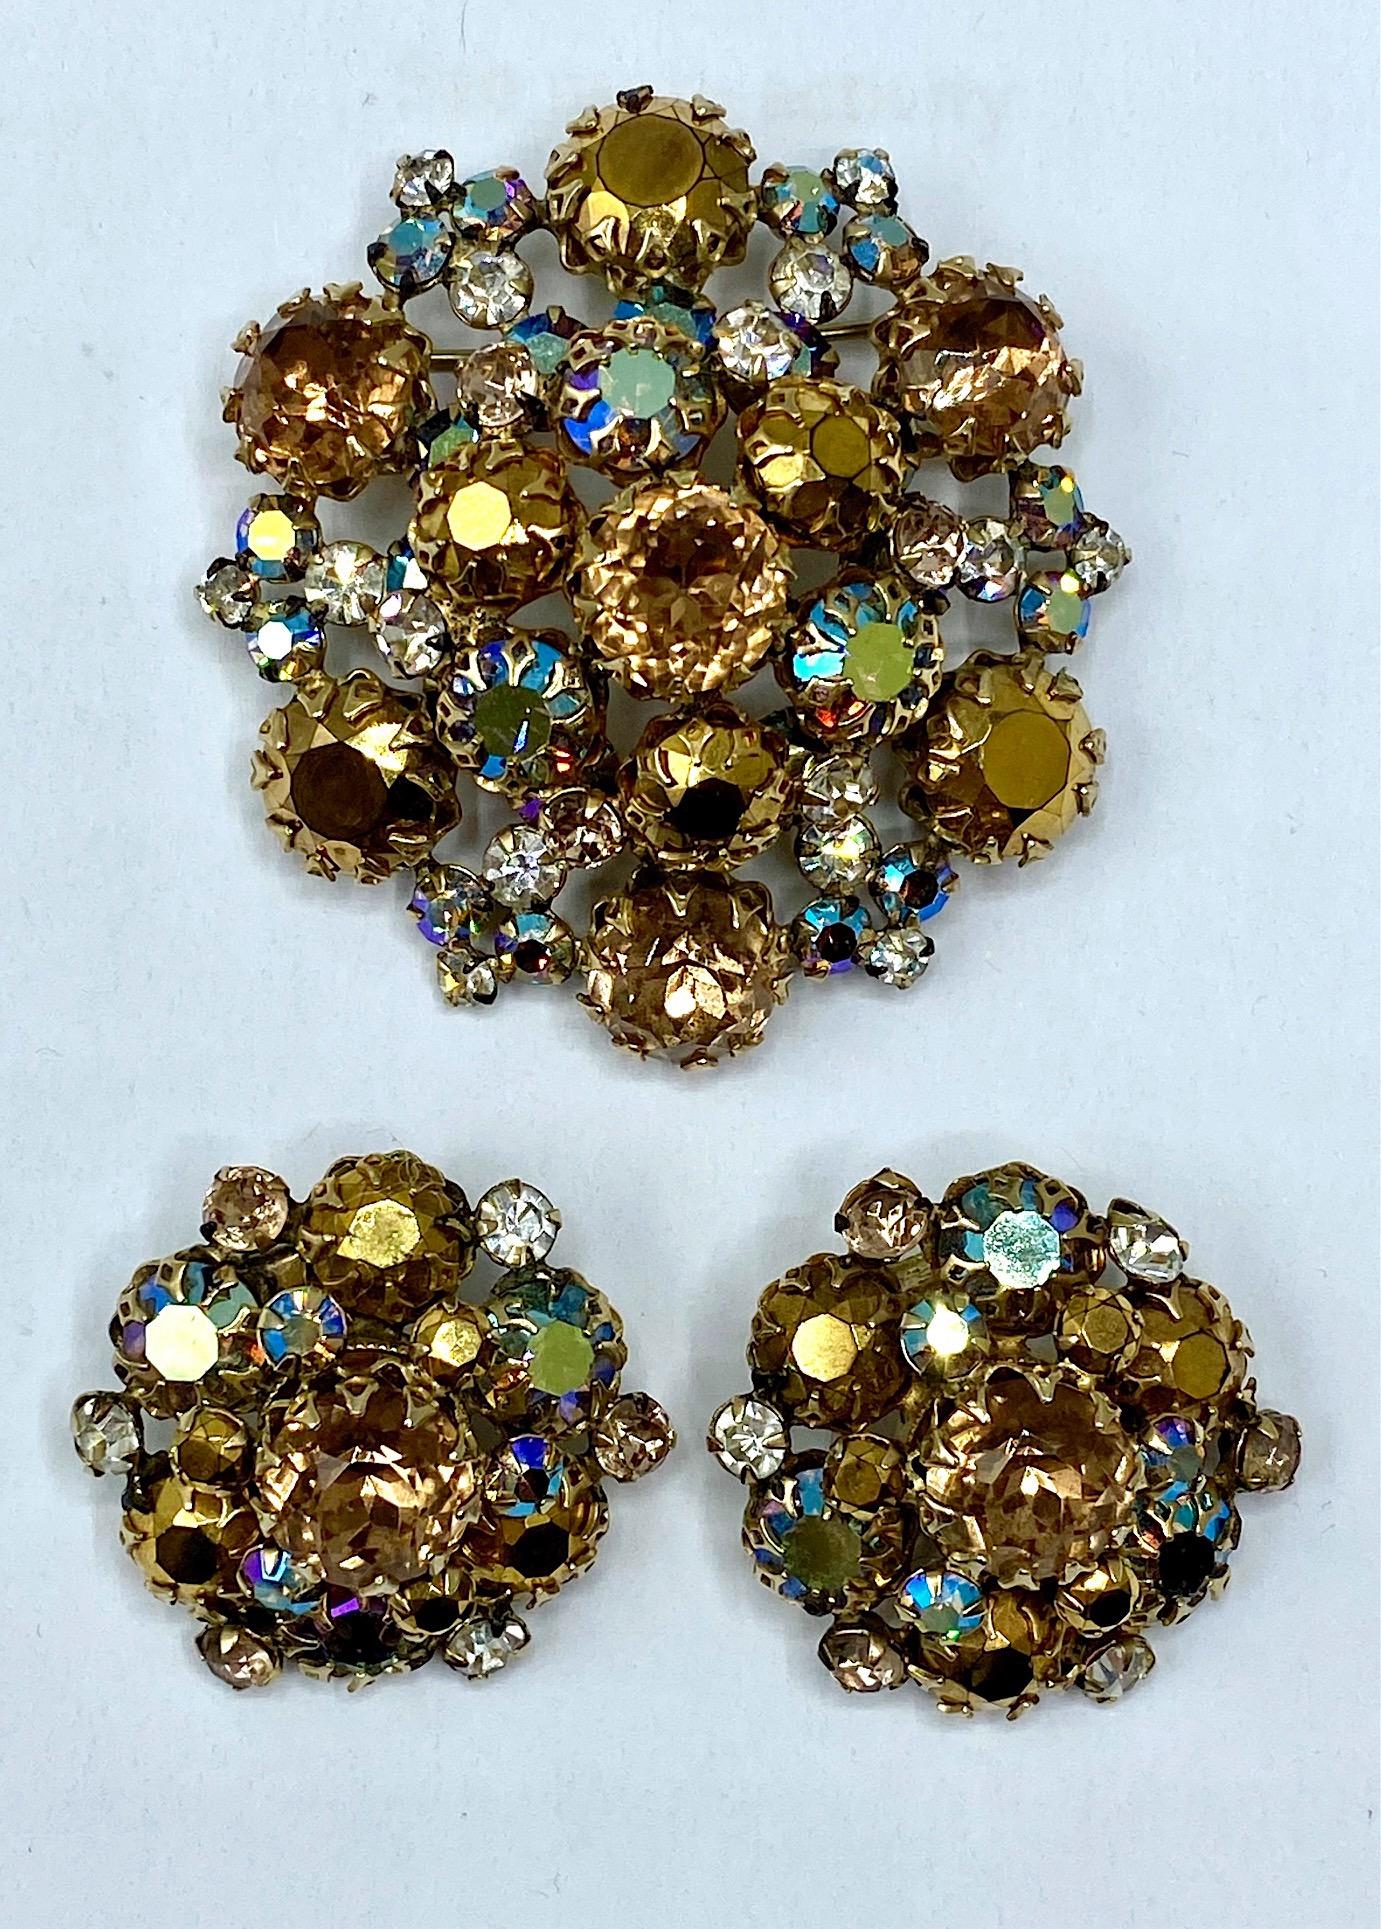 Superbe ensemble de broches et de boucles d'oreilles en strass des années 1950, réalisé par la célèbre société de bijoux en strass Schreiner de New York. Ils étaient célèbres pour leurs designs uniques et leurs combinaisons de couleurs innovantes.